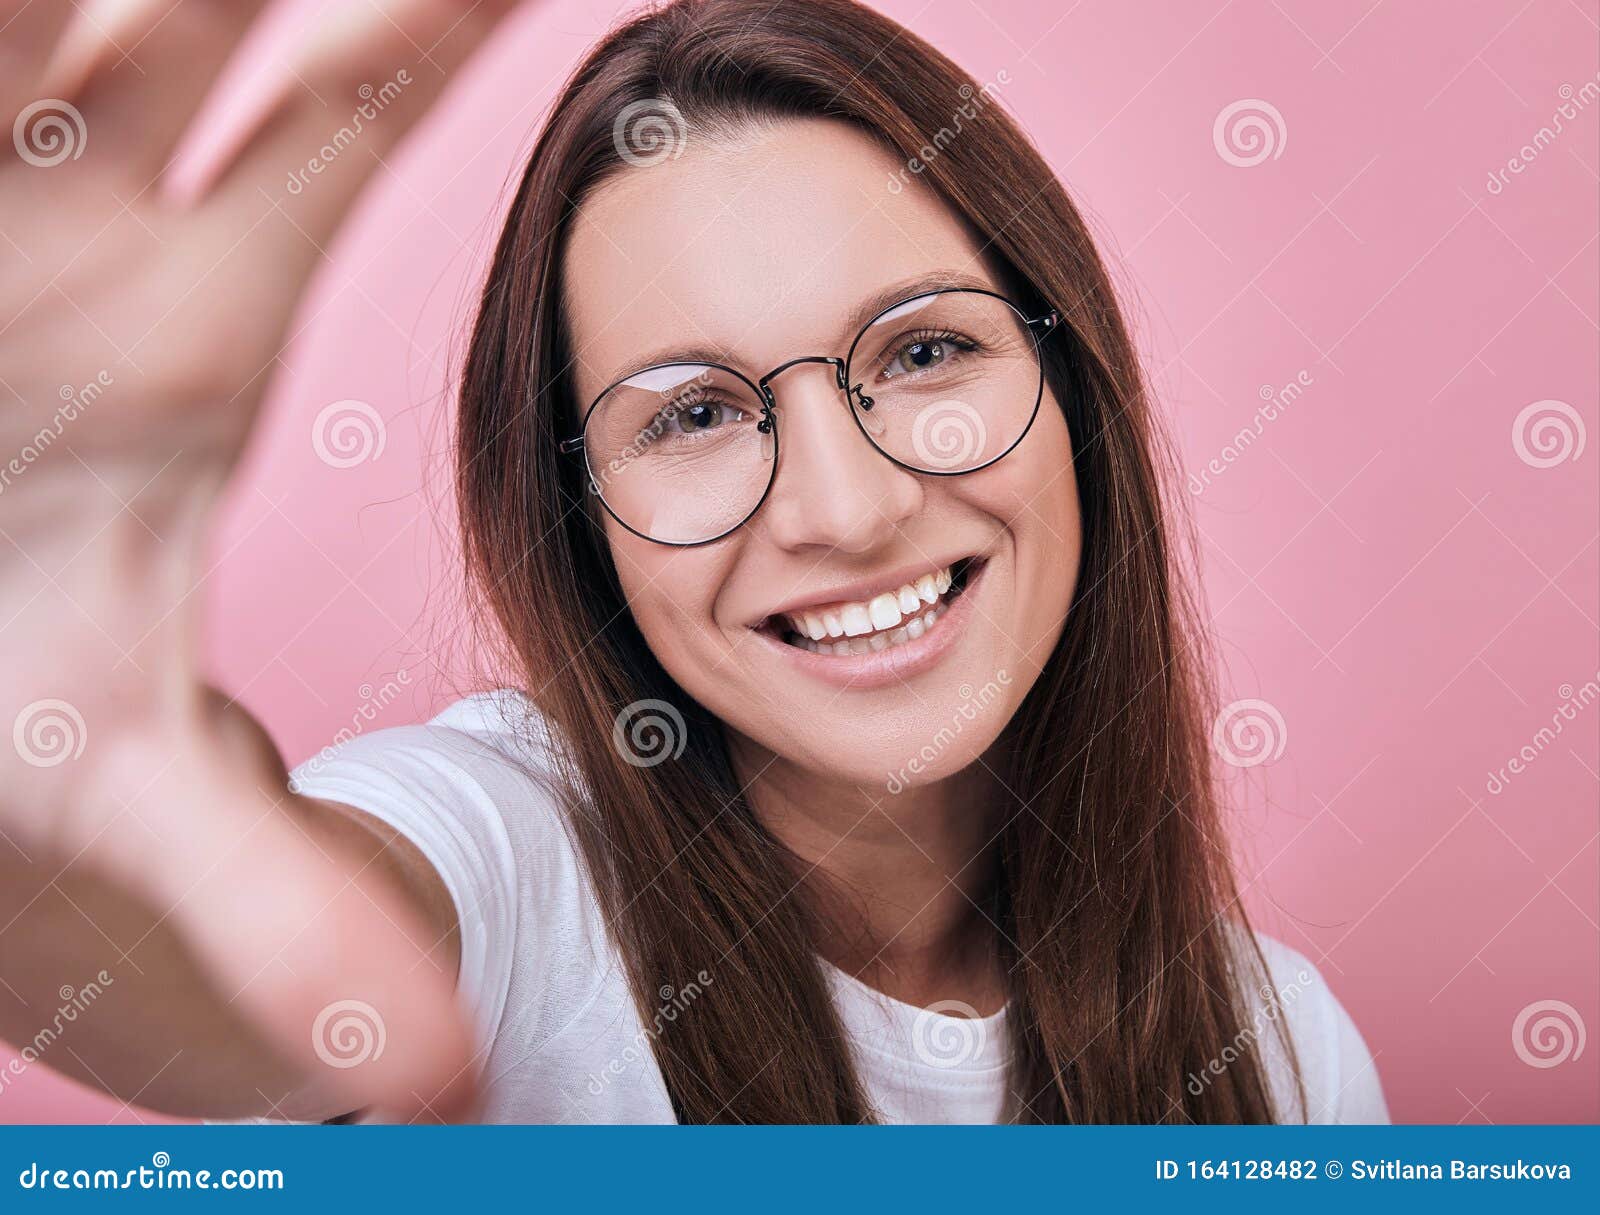 cute babe glasses takes porn scene picture